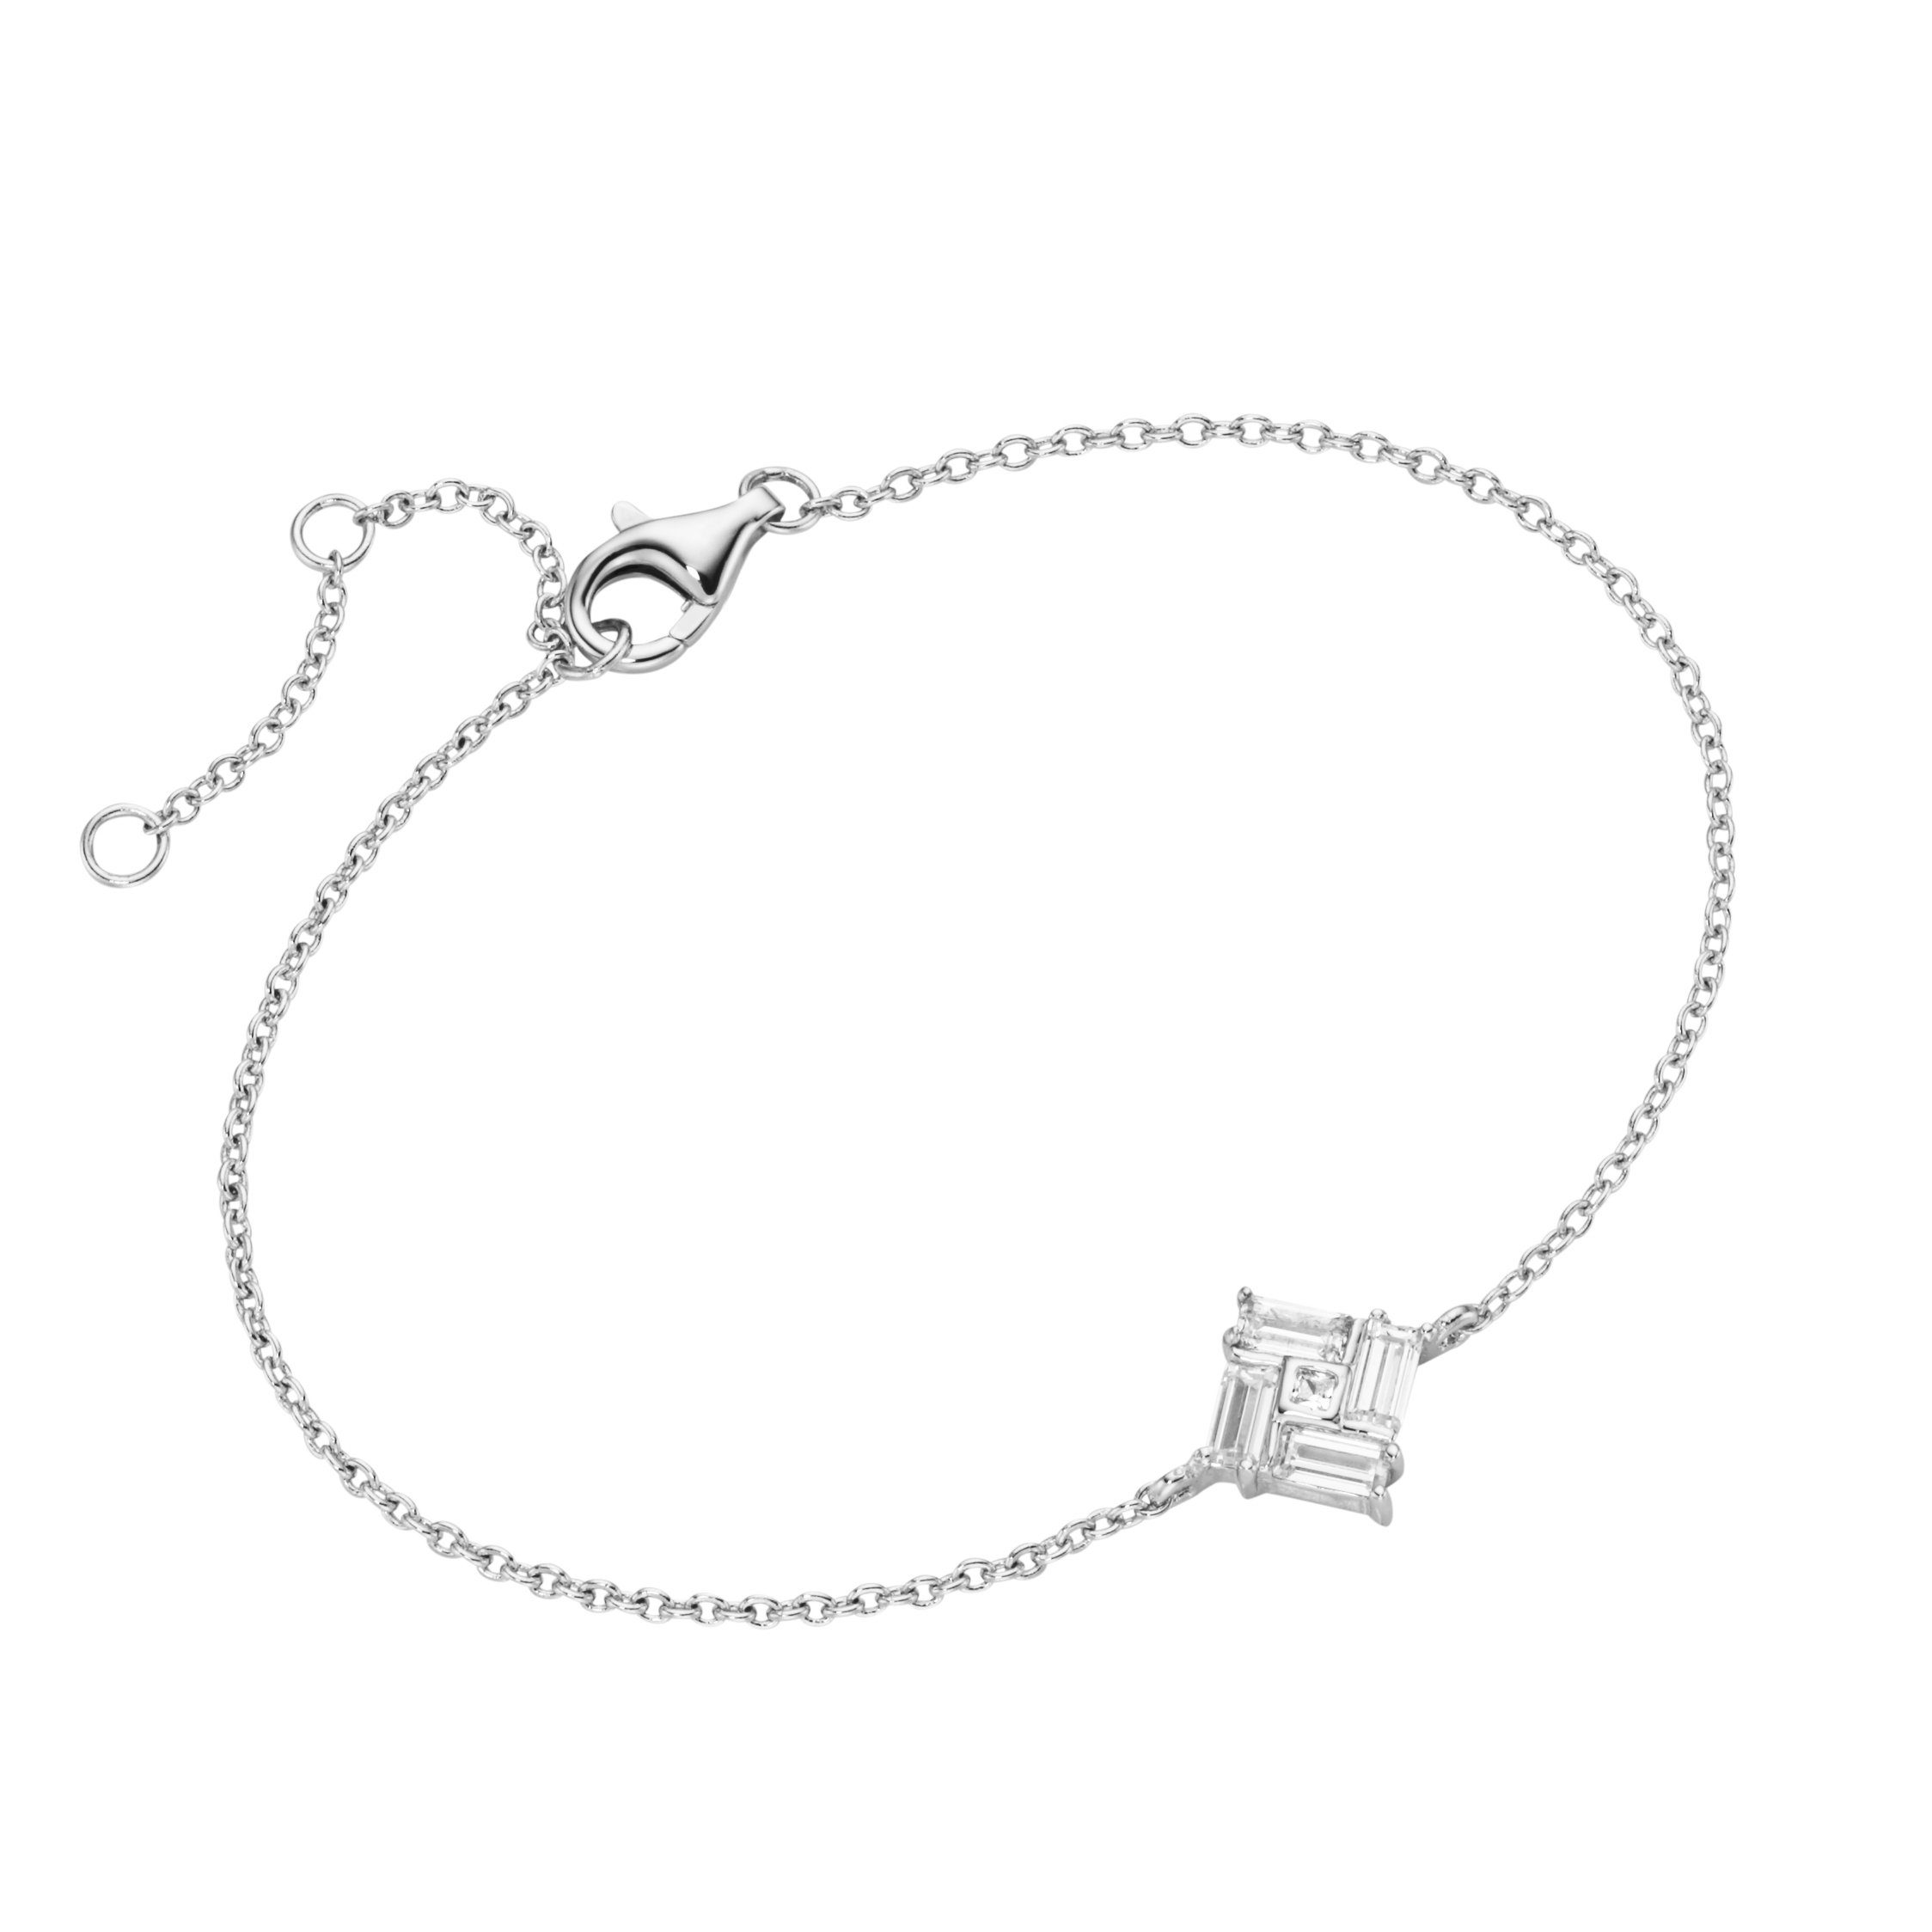 Smart Jewel Armband mit Zirkonia Steinen, Silber 925